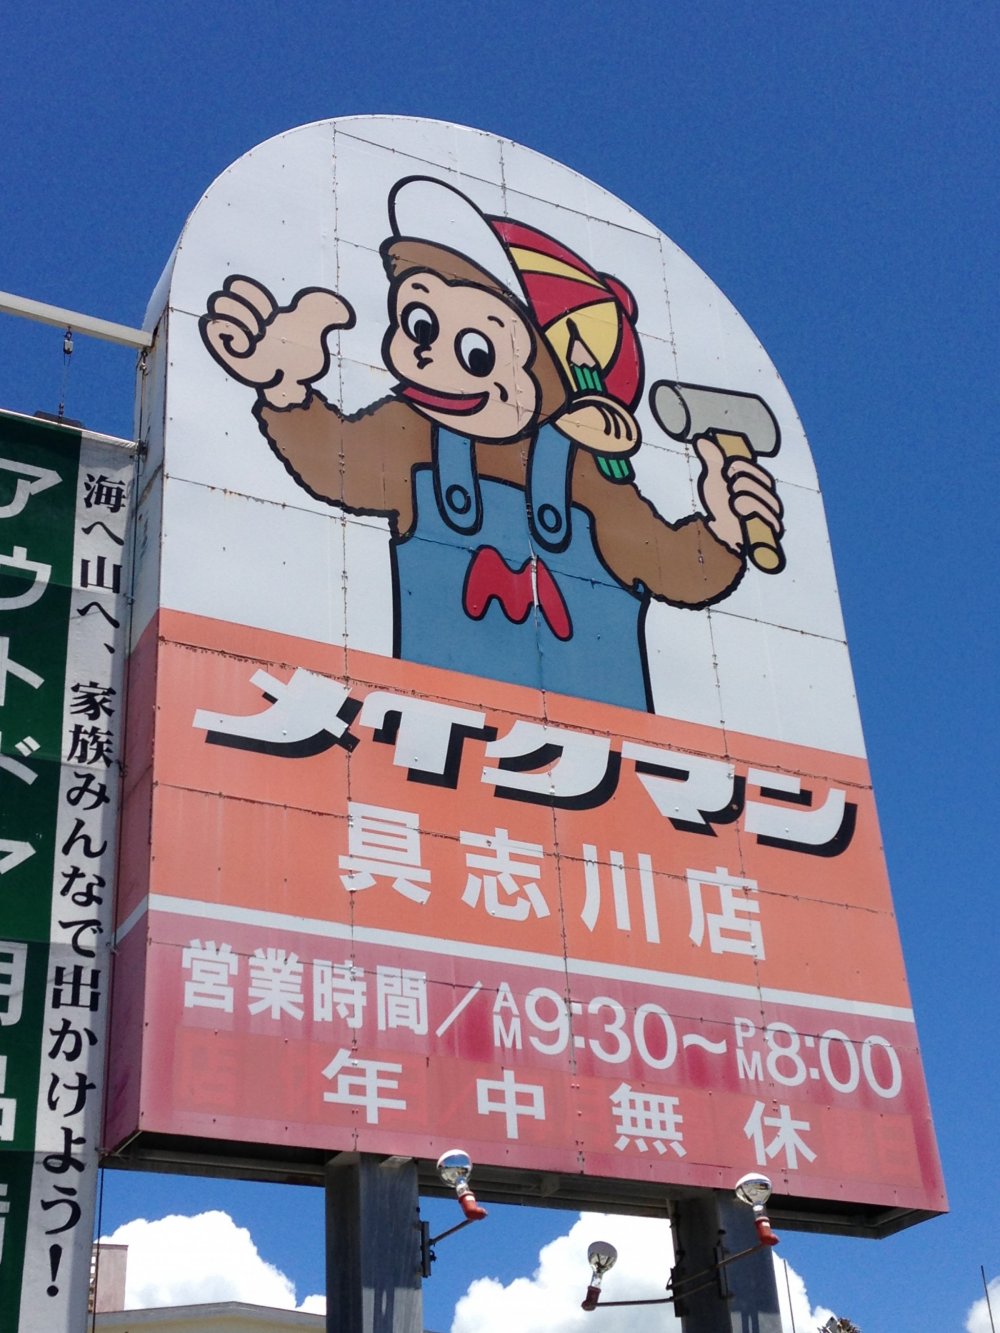 Cửa hàng Make Man có thể dễ dàng nhận ra bởi chú khỉ trên biển hiệu